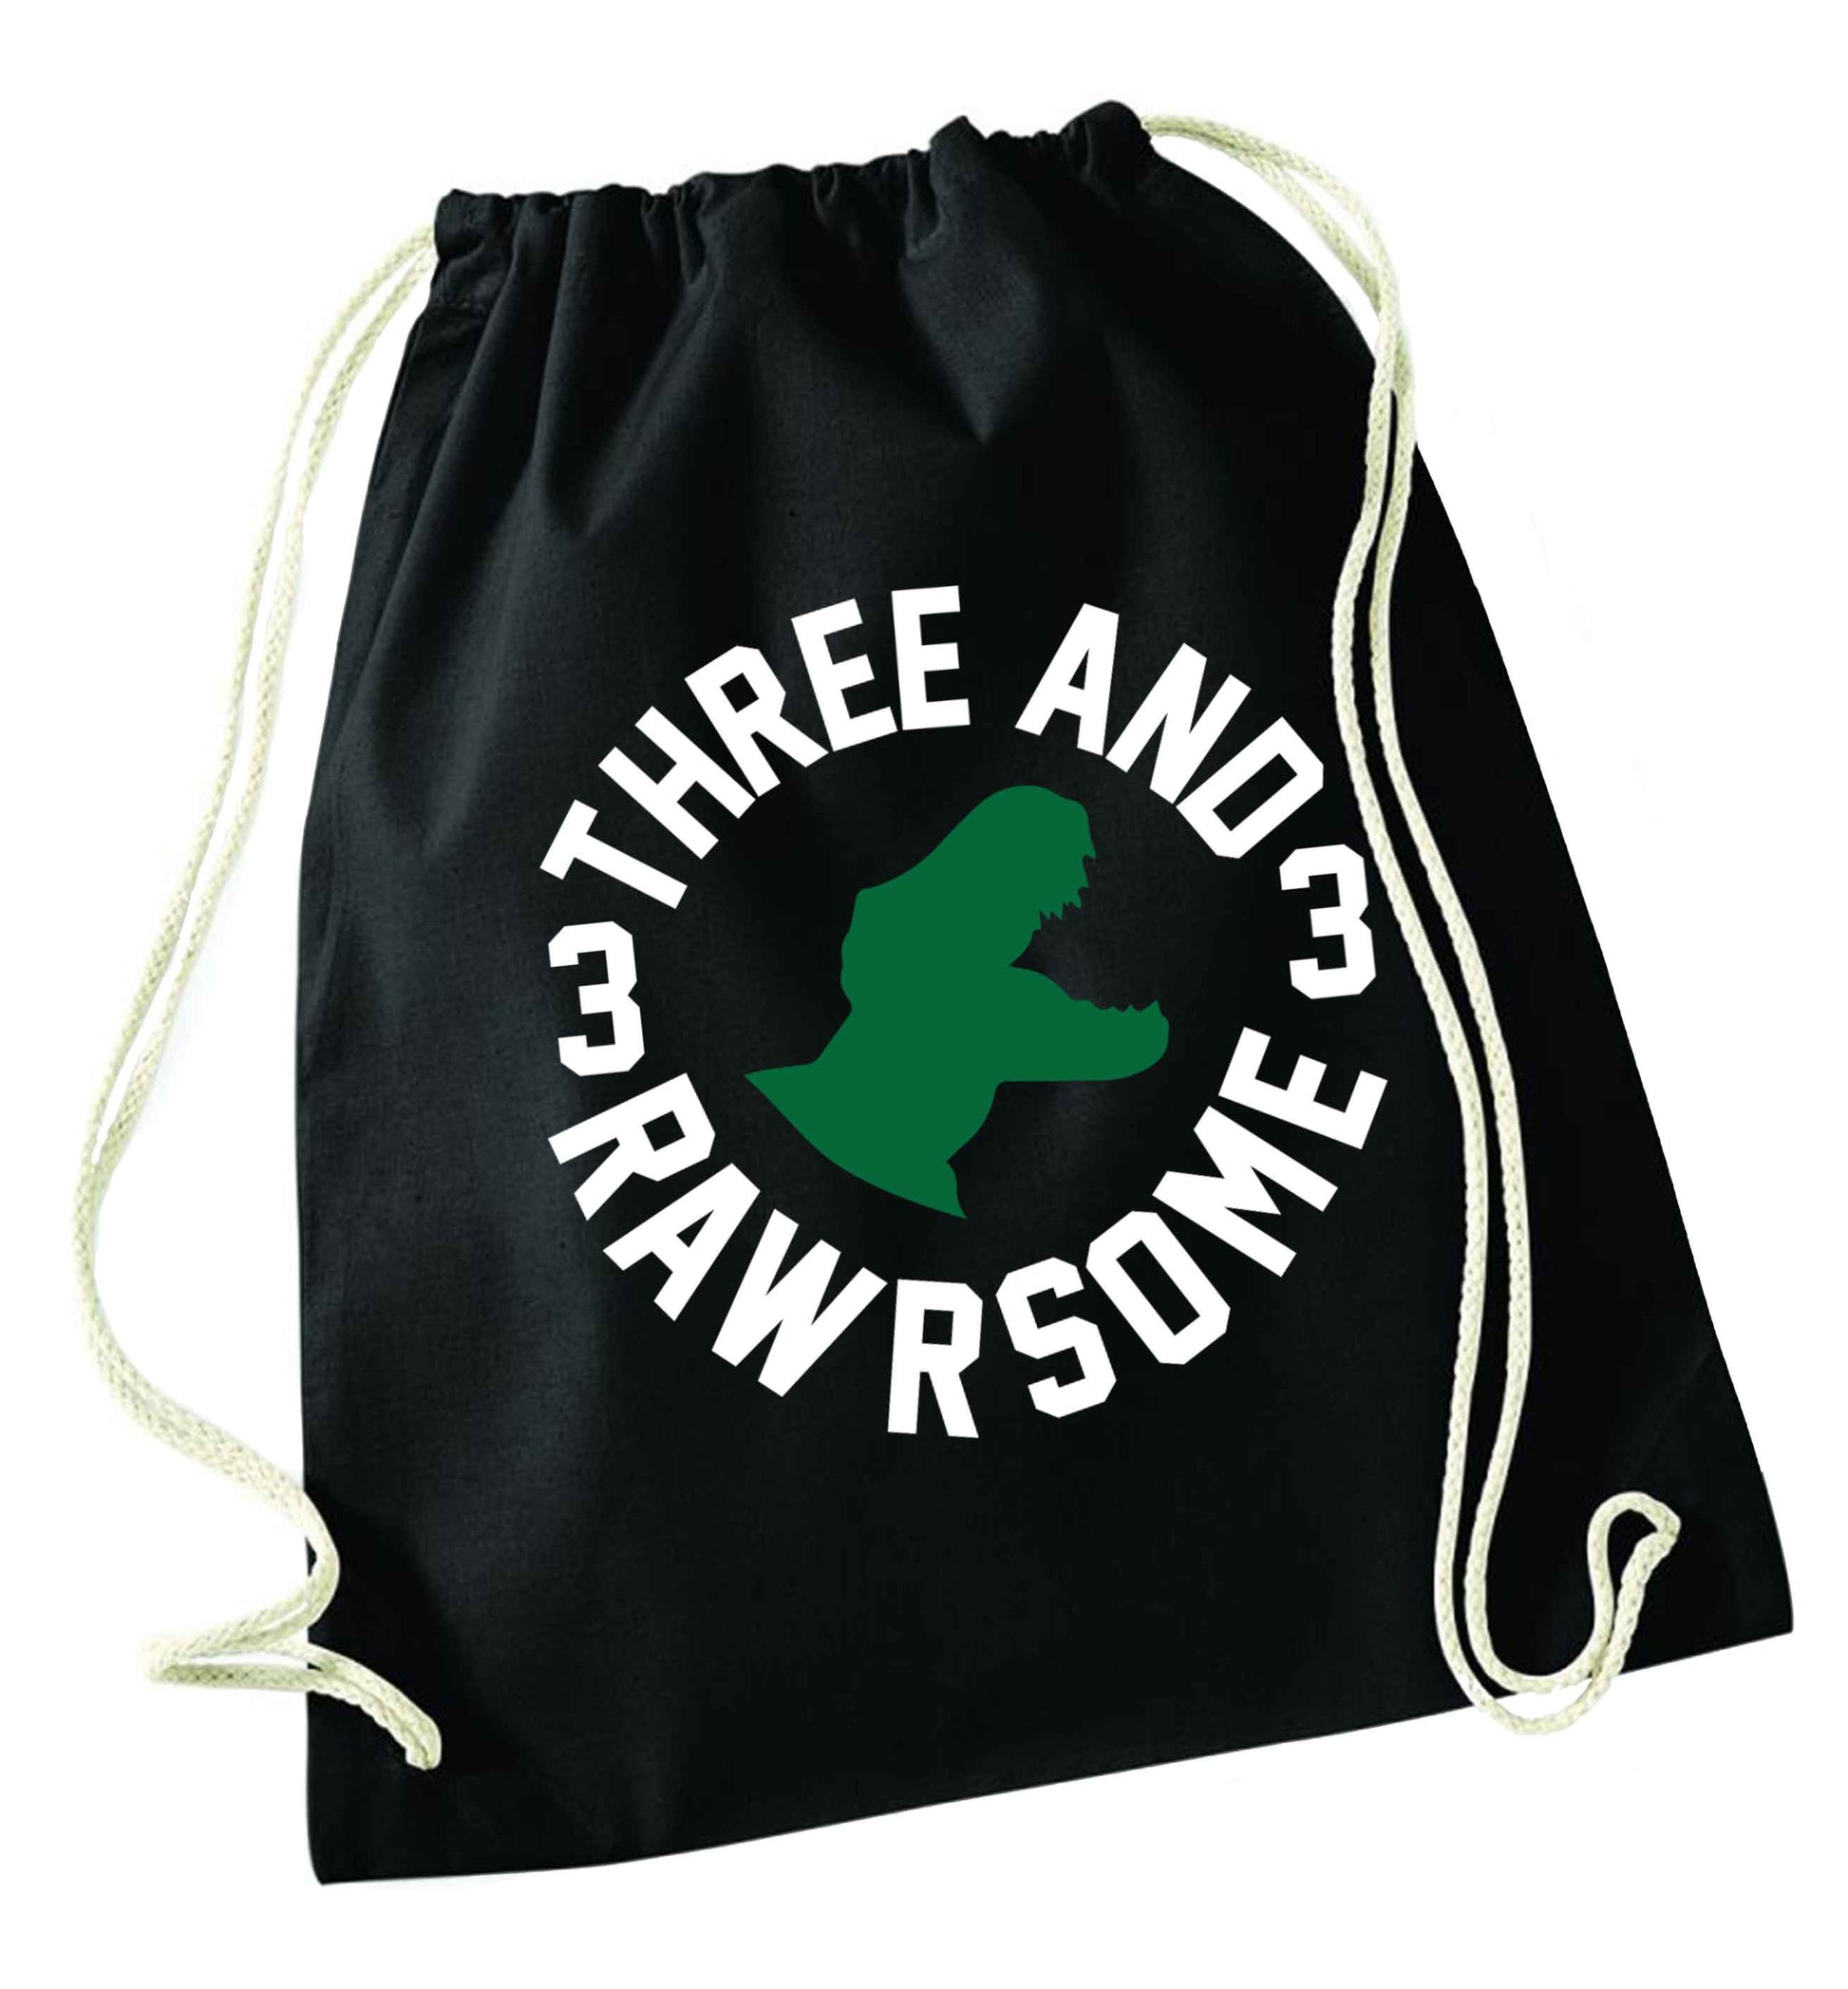 Three and rawrsome black drawstring bag